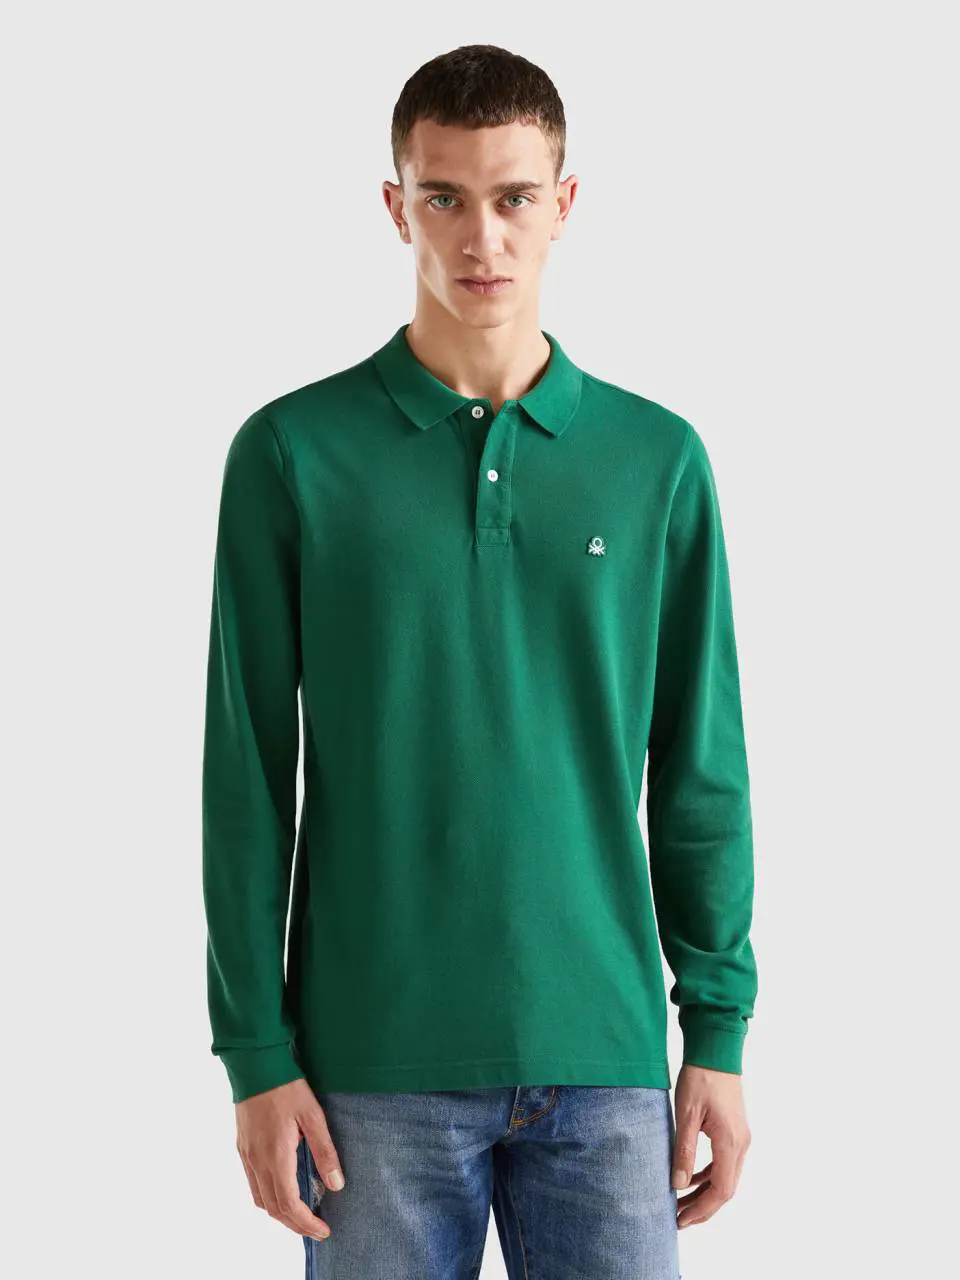 Benetton long sleeve 100% cotton polo. 1